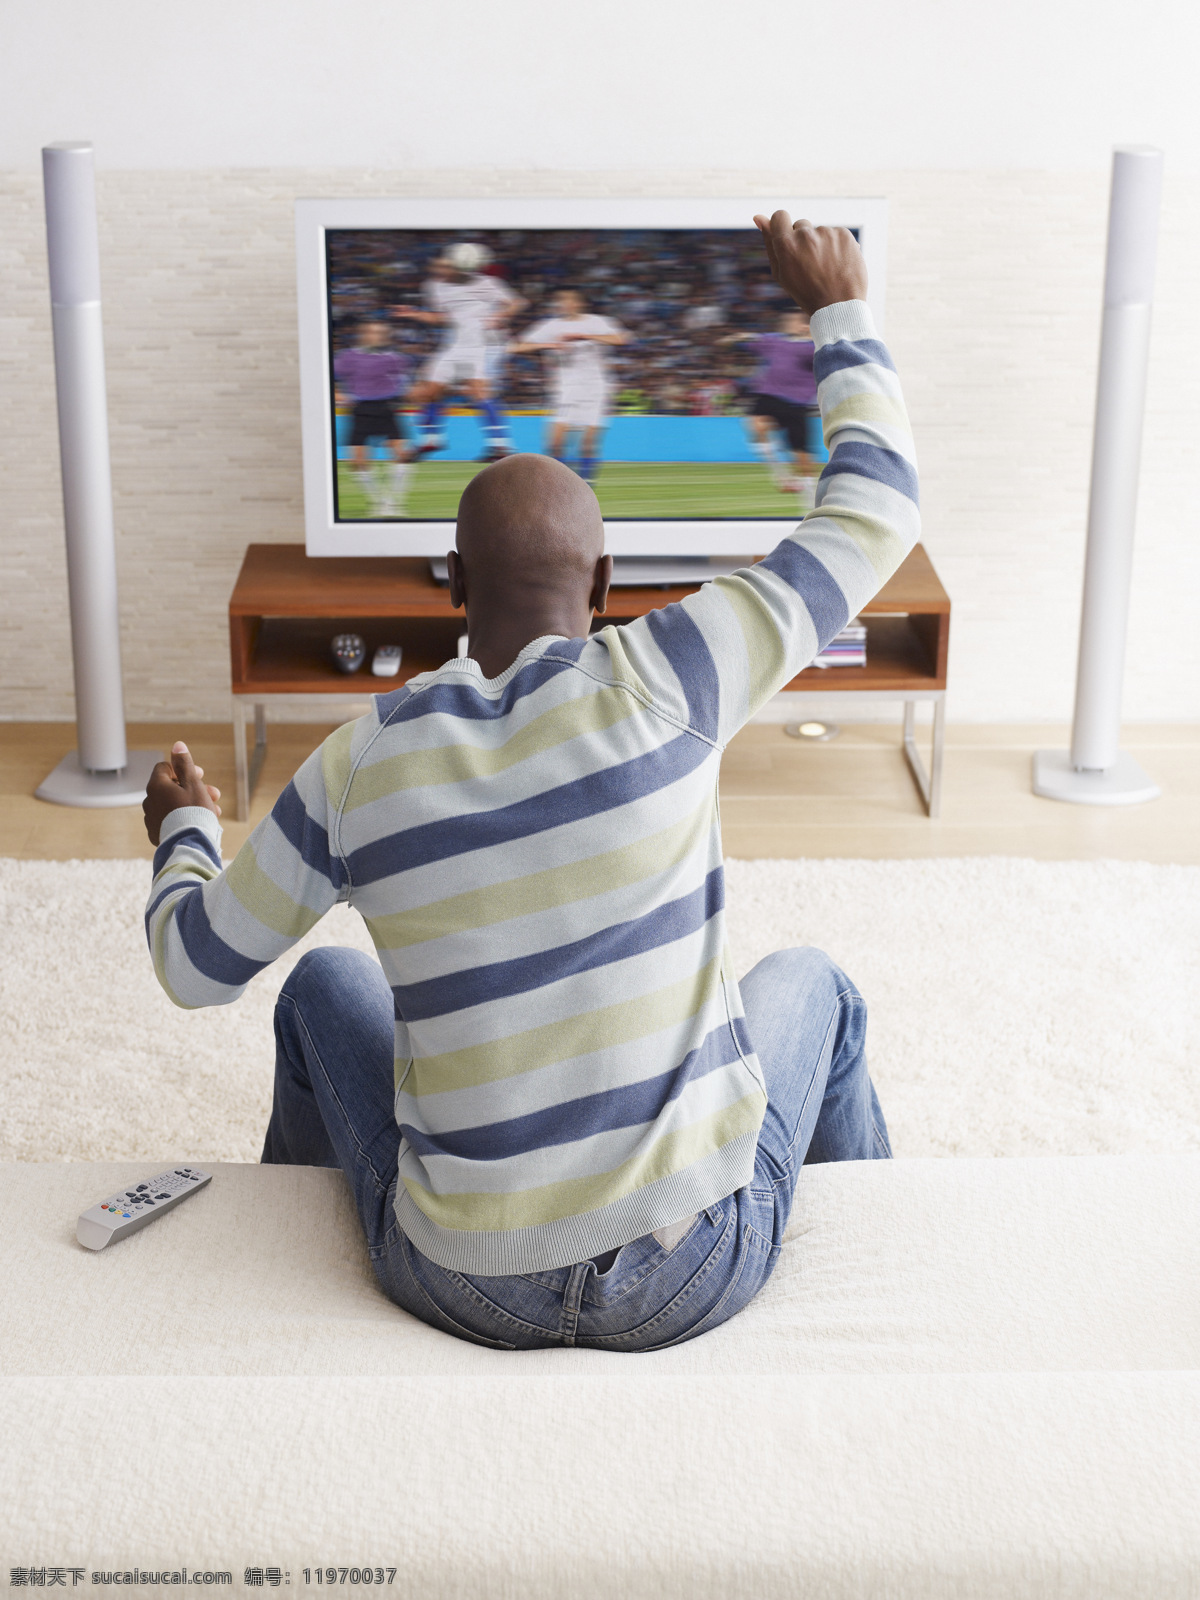 看电视 看球赛 兴奋 激动 球迷 男人 男性 日常生活 人物摄影 人物图库 人物 高清 日常 生活